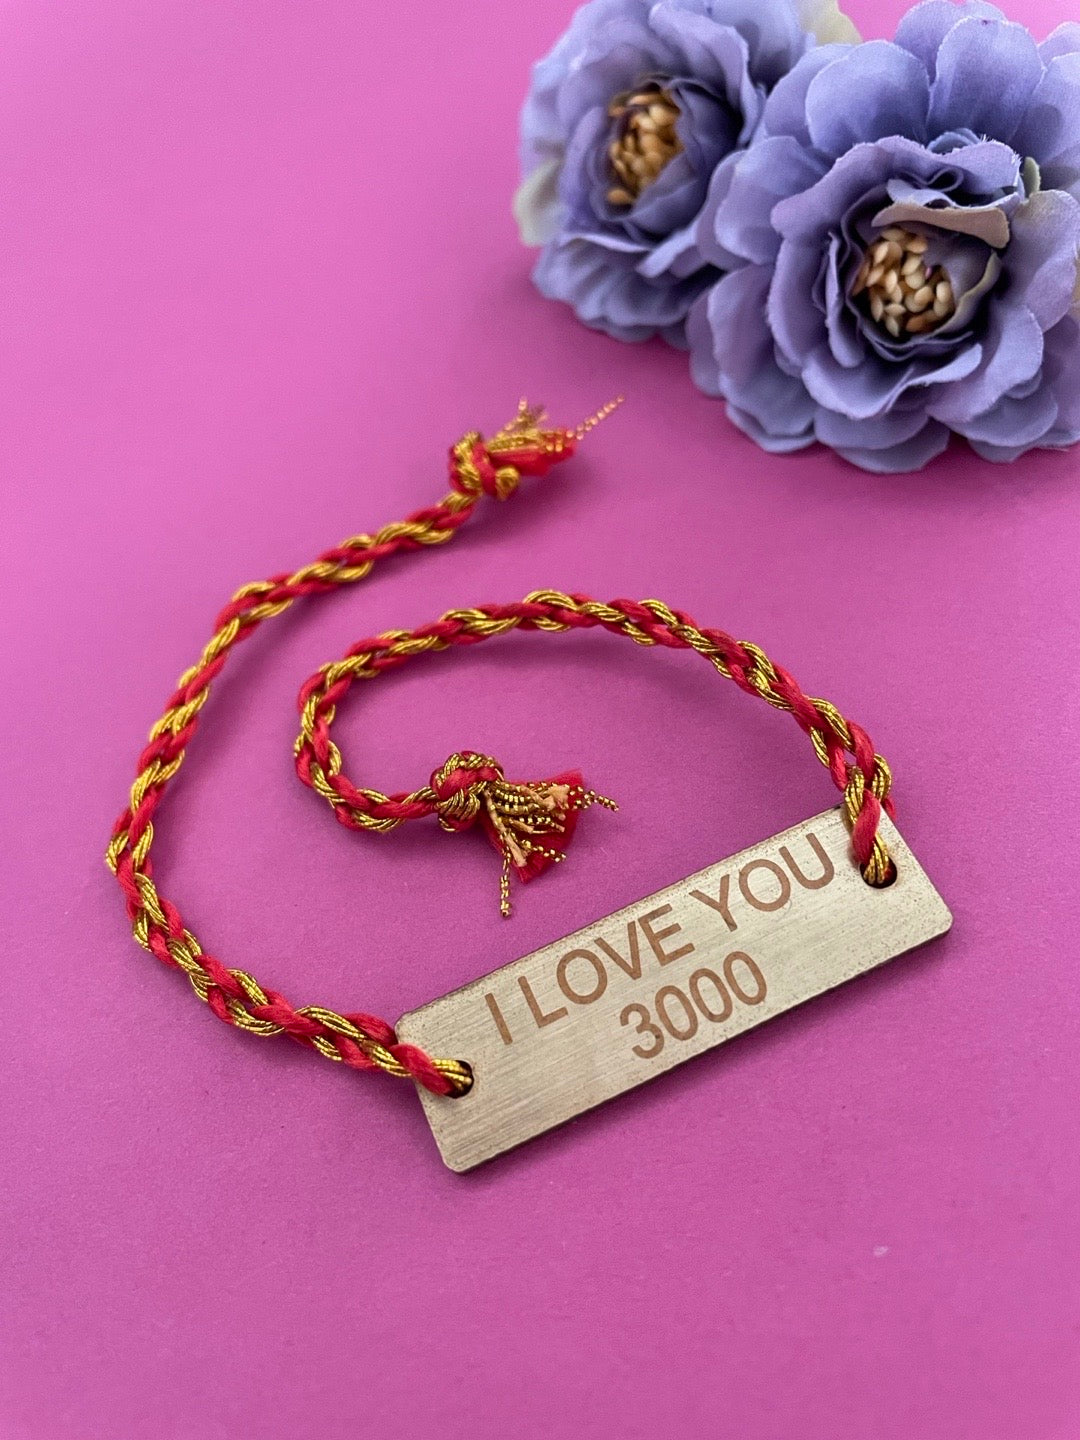 image for "I LOVE YOU 3000" Rakhi Bracelet for Raksha Bandhan